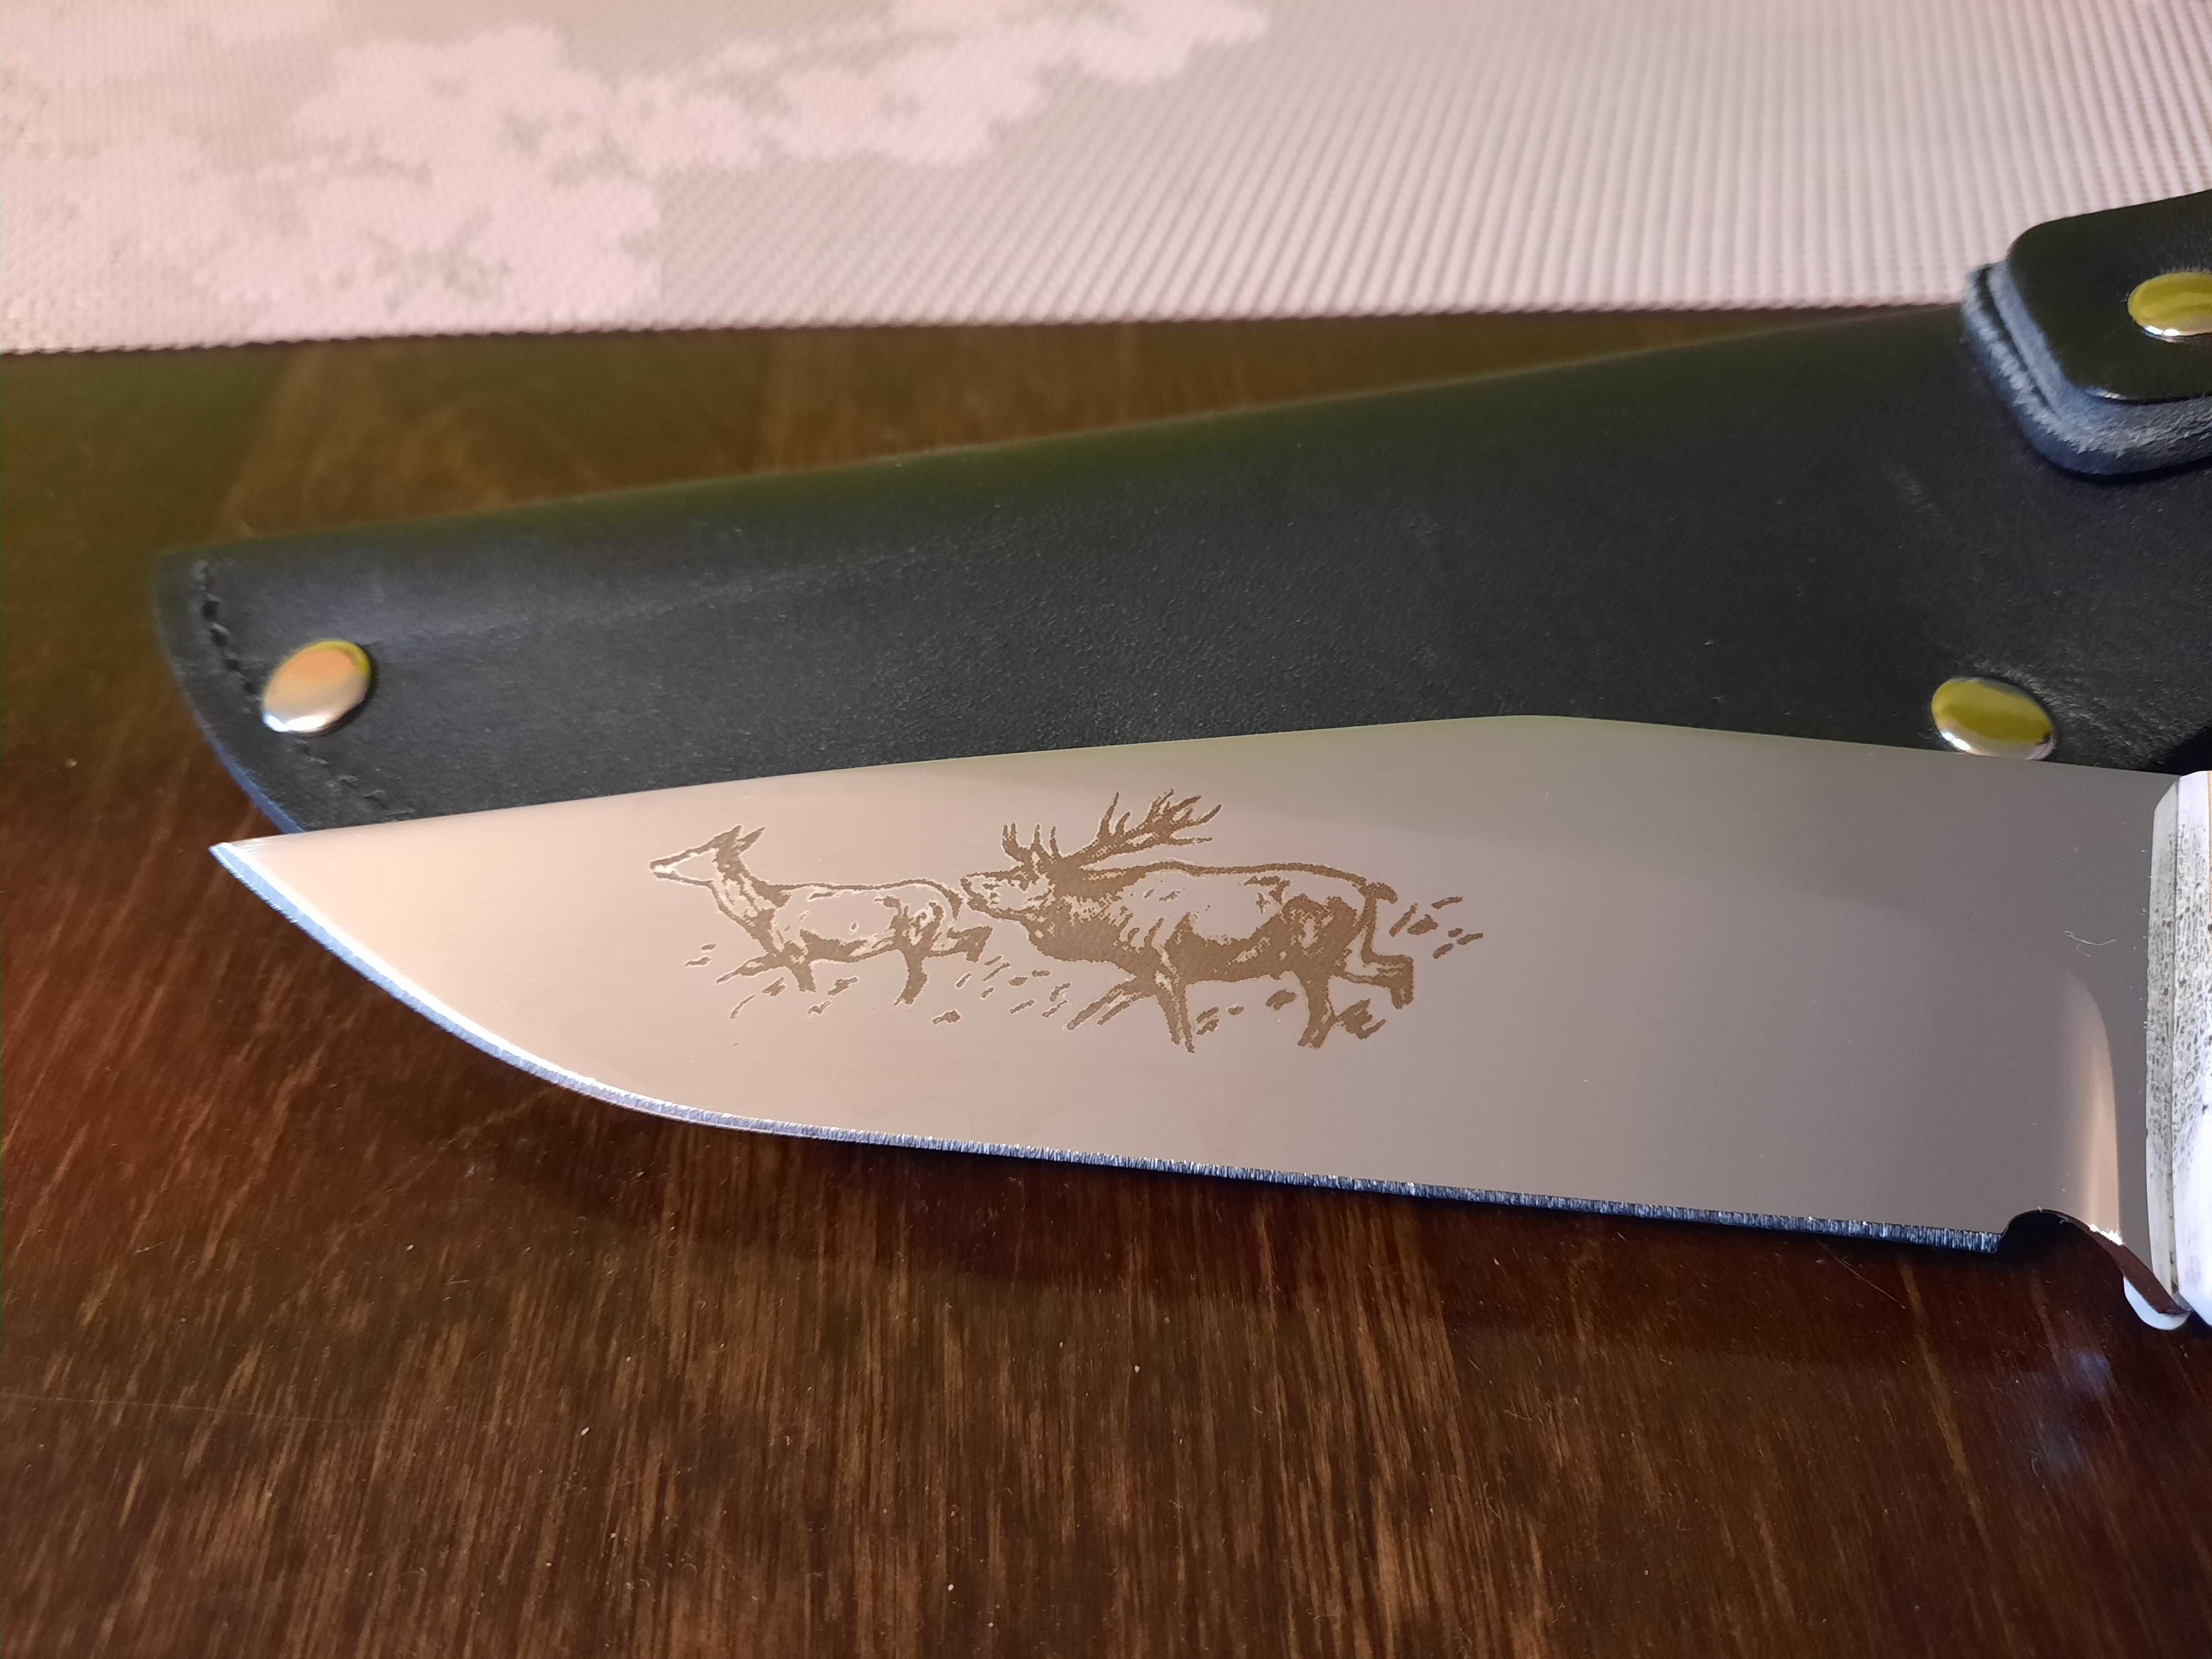 Oryginalny, niepowtarzalny nóż myśliwski z grawerem, skórzana pochwa